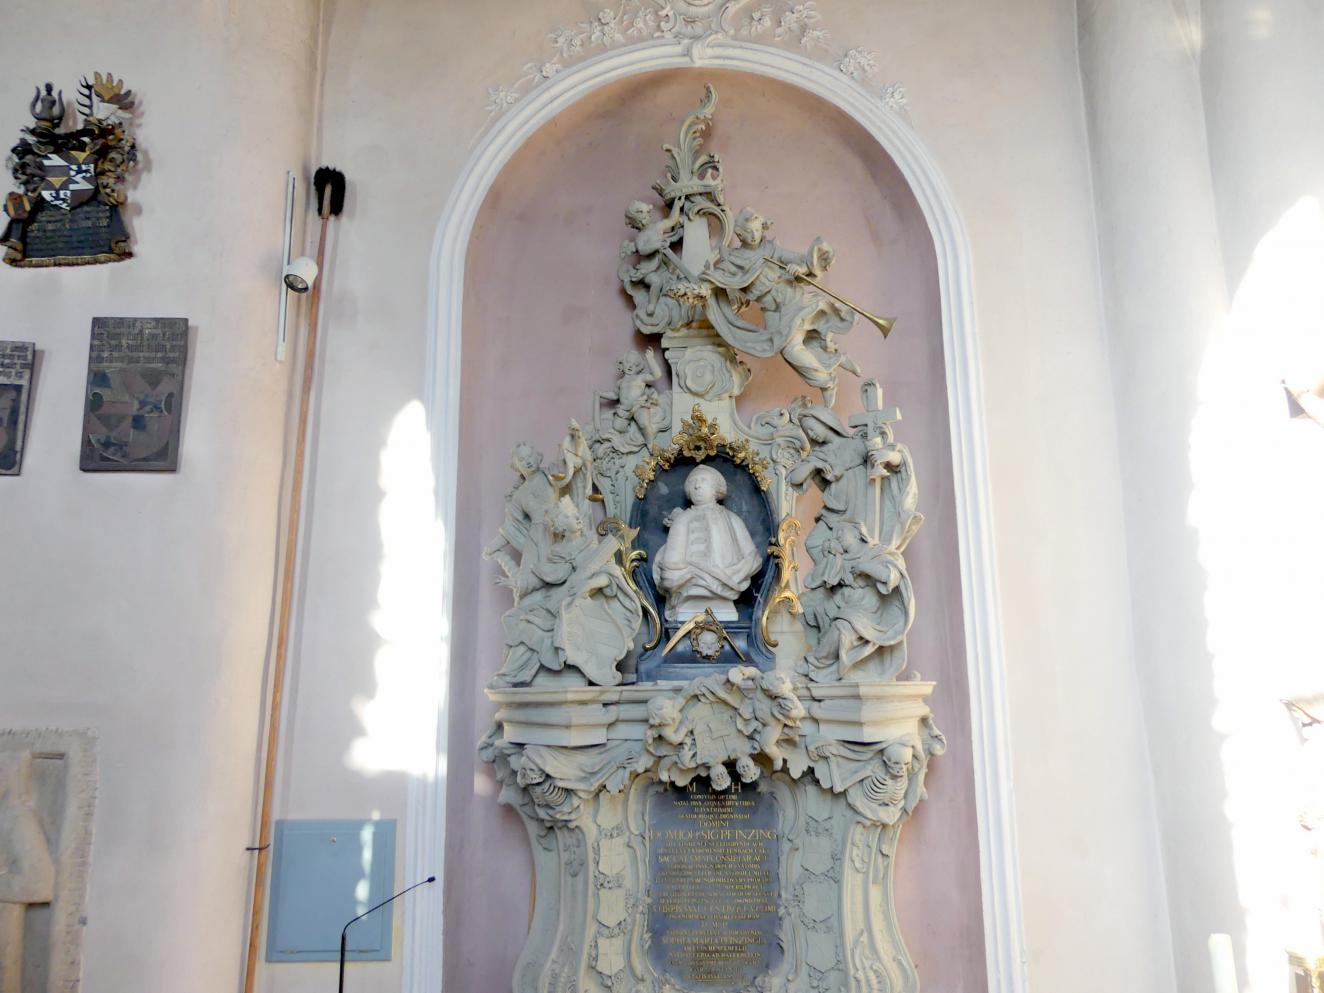 Joseph Bonaventura Mutschele (1762–1766), Grabmal für Johann Sigmund Pfinzing, Großgründlach, ev. Pfarrkirche St. Laurentius, nach 1764, Bild 1/5